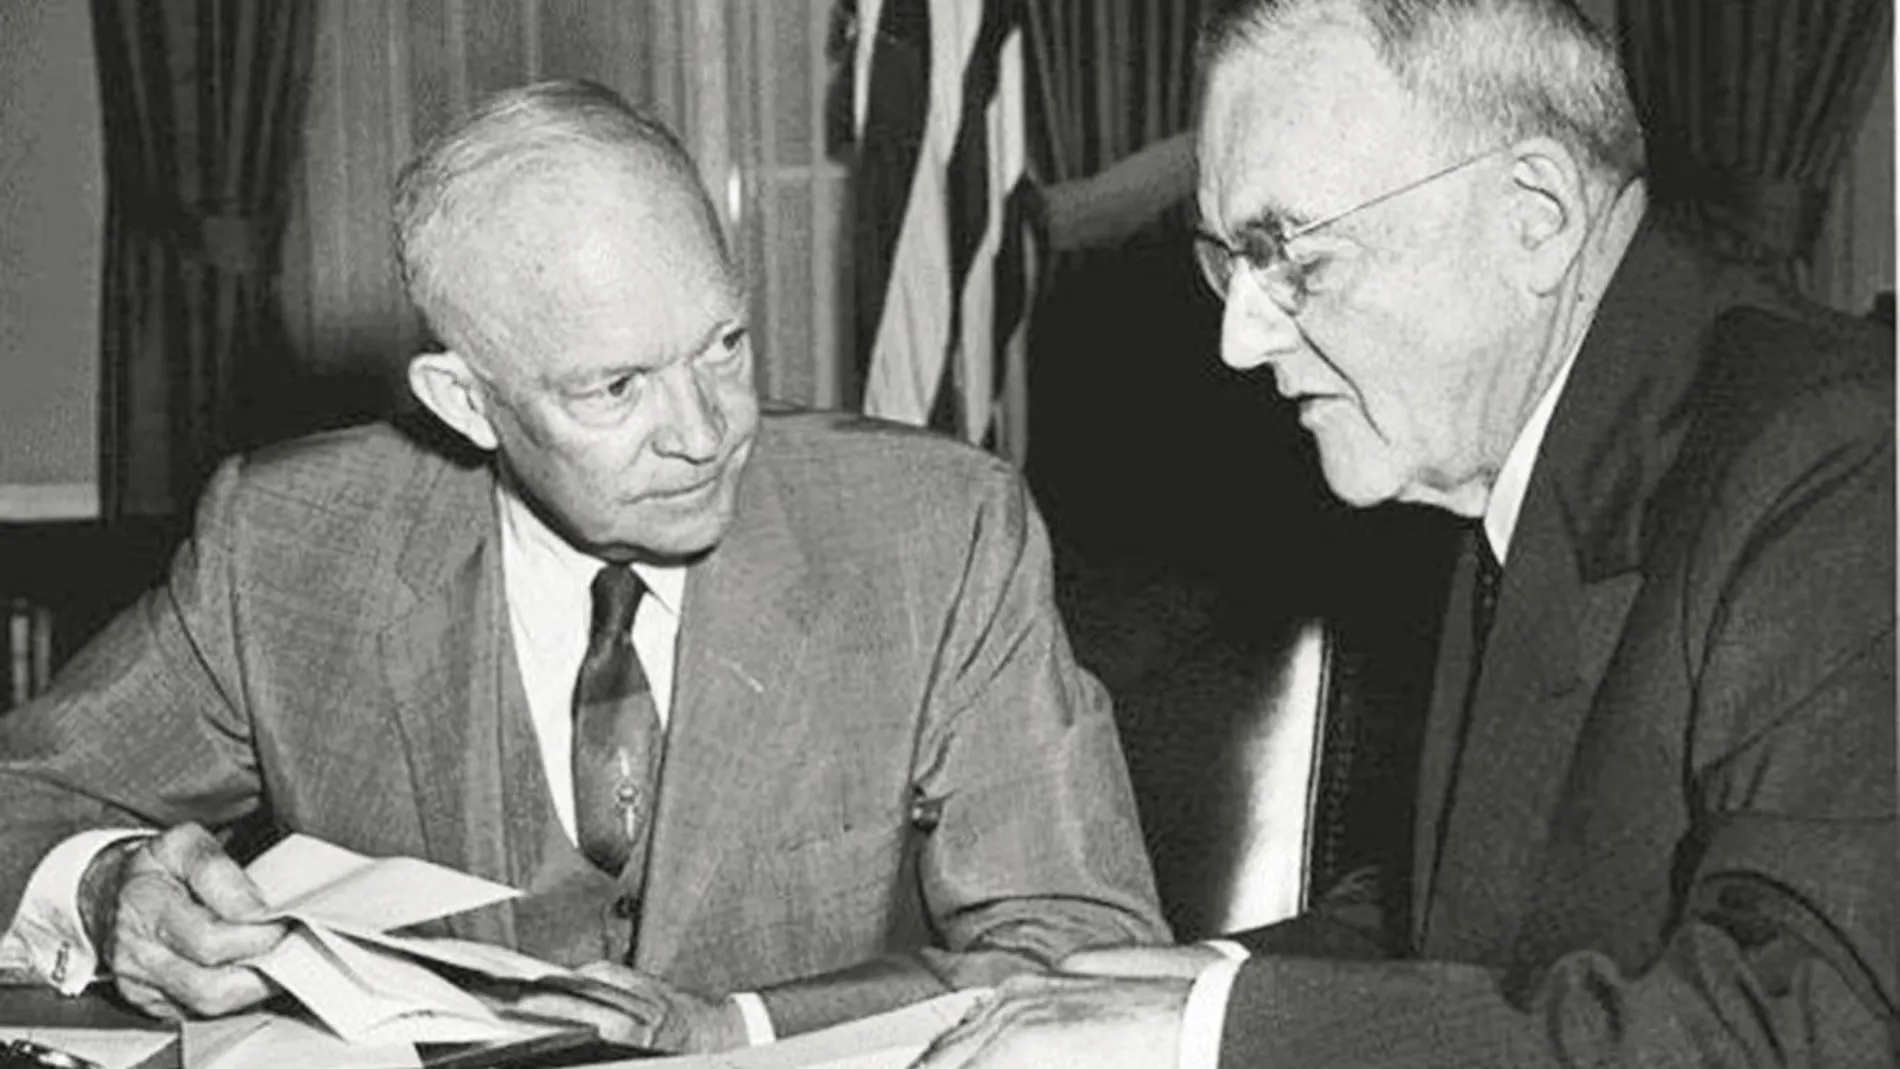 Un tipo peligroso. El presidente Eisenhower depositó toda su política exterior en John Foster Dulles (derecha), un personaje no muy conocido por el gran público y que llegó a apostar por lanzar bombas atómicas en Vietnam, desestabilizó Irán, apoyó por intereses propios la United Fruit Company en Centroamérica y odiaba el comunismo